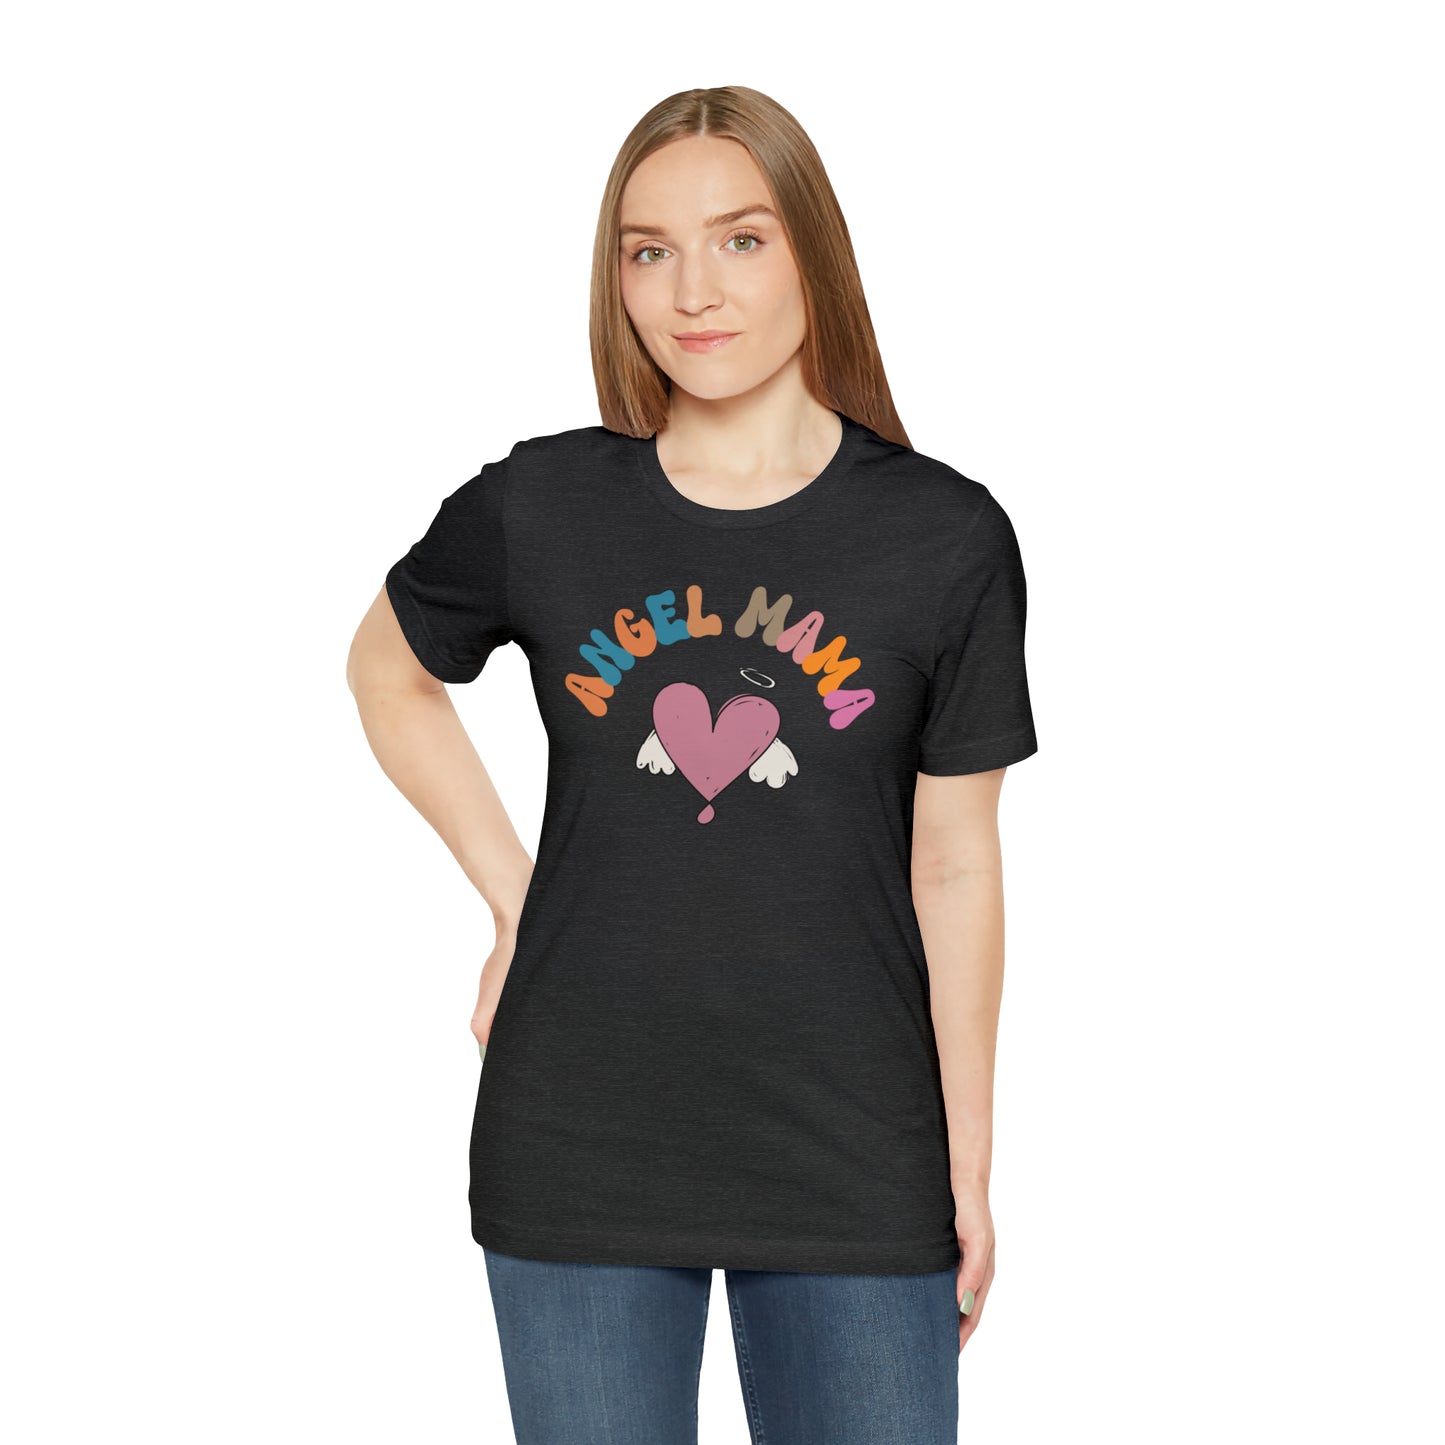 Angel Mama Shirt, Mom Life Shirt, Gift for Mama, Shirt for Angel Mom, Memorial Shirt, Infant Loss Shirt, T444